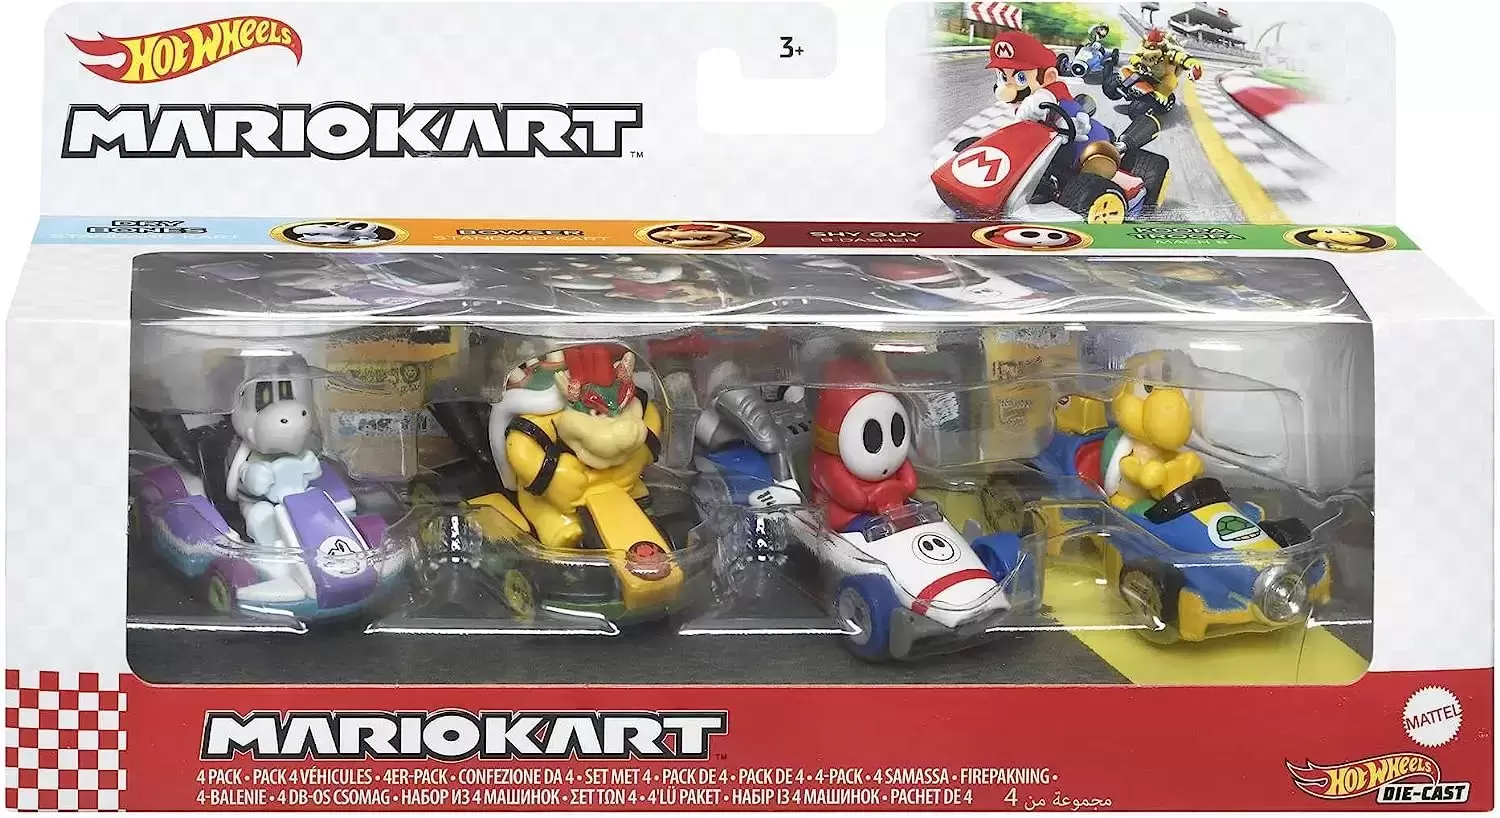 Hot Wheels Mario Kart - 4 Pack : Dry Bones + Bowser + Shy Guy + Koopa Troopa